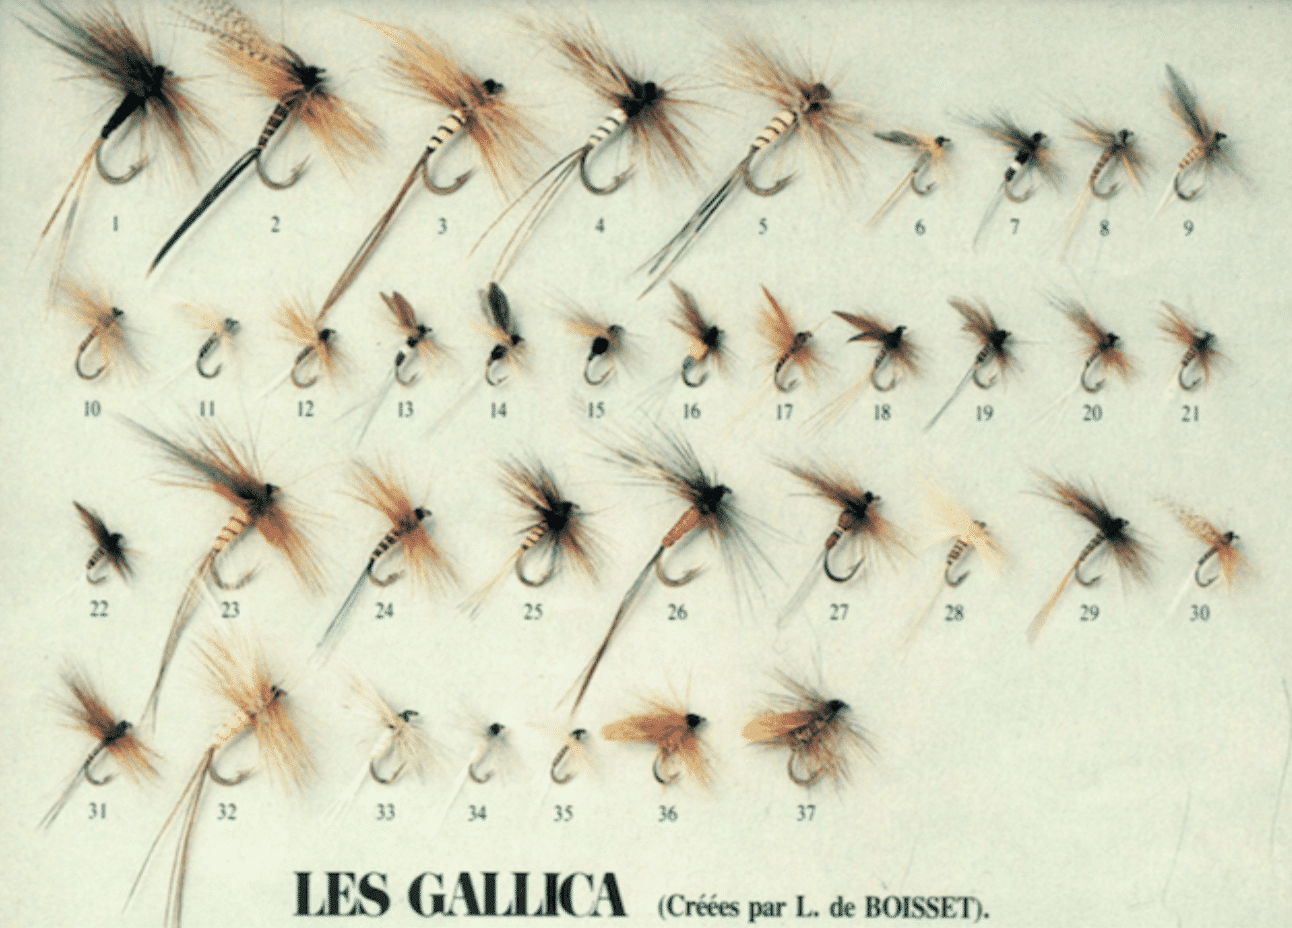 Trout flies  fishing magazine - Le Comptoir Général